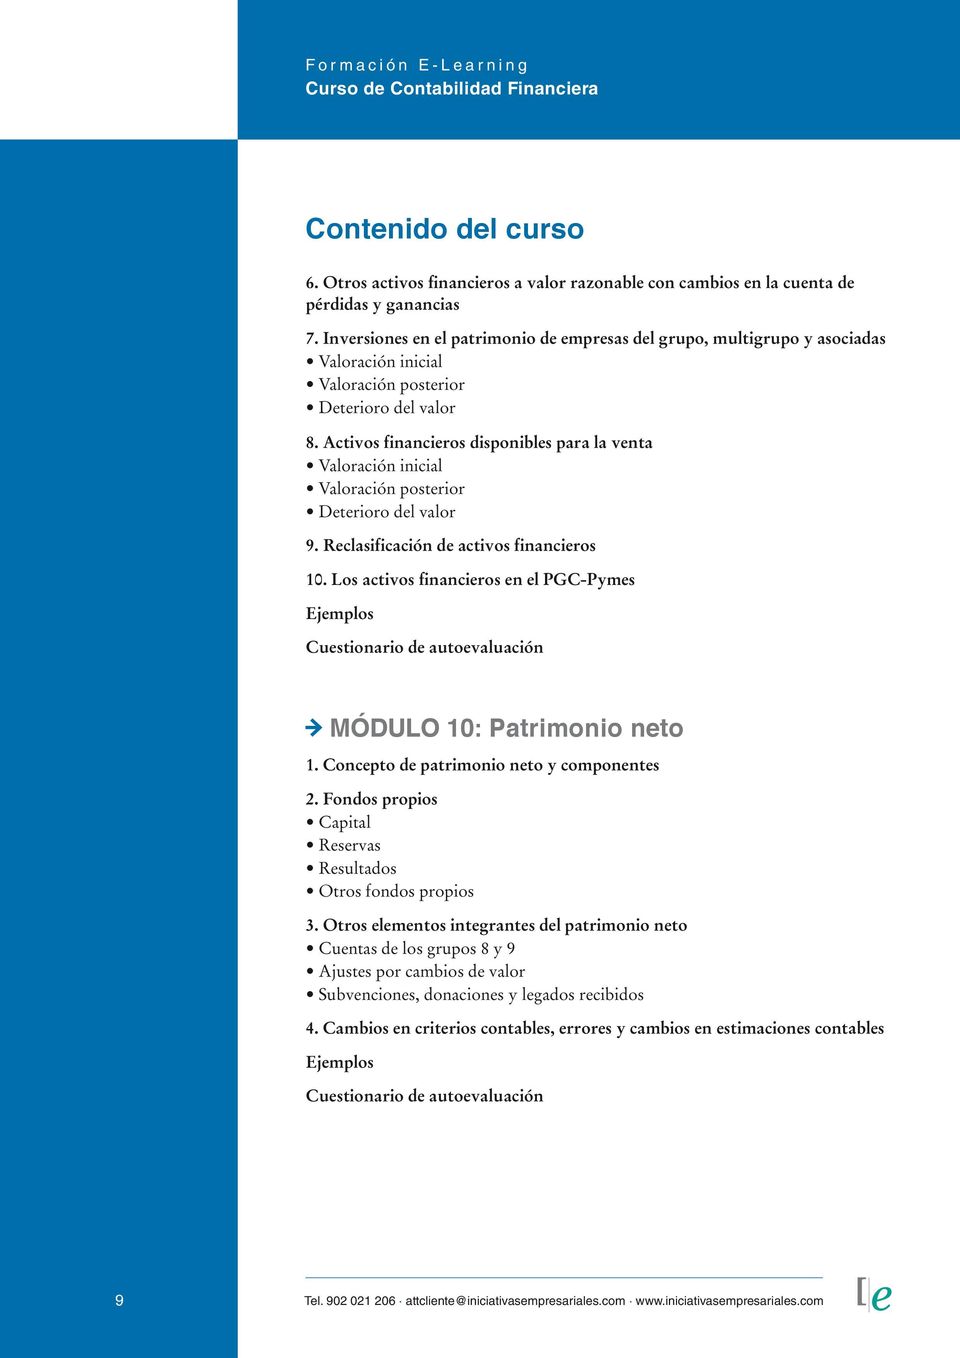 Reclasificación de activos financieros 10. Los activos financieros en el PGC-Pymes MÓDULO 10: Patrimonio neto 1. Concepto de patrimonio neto y componentes 2.